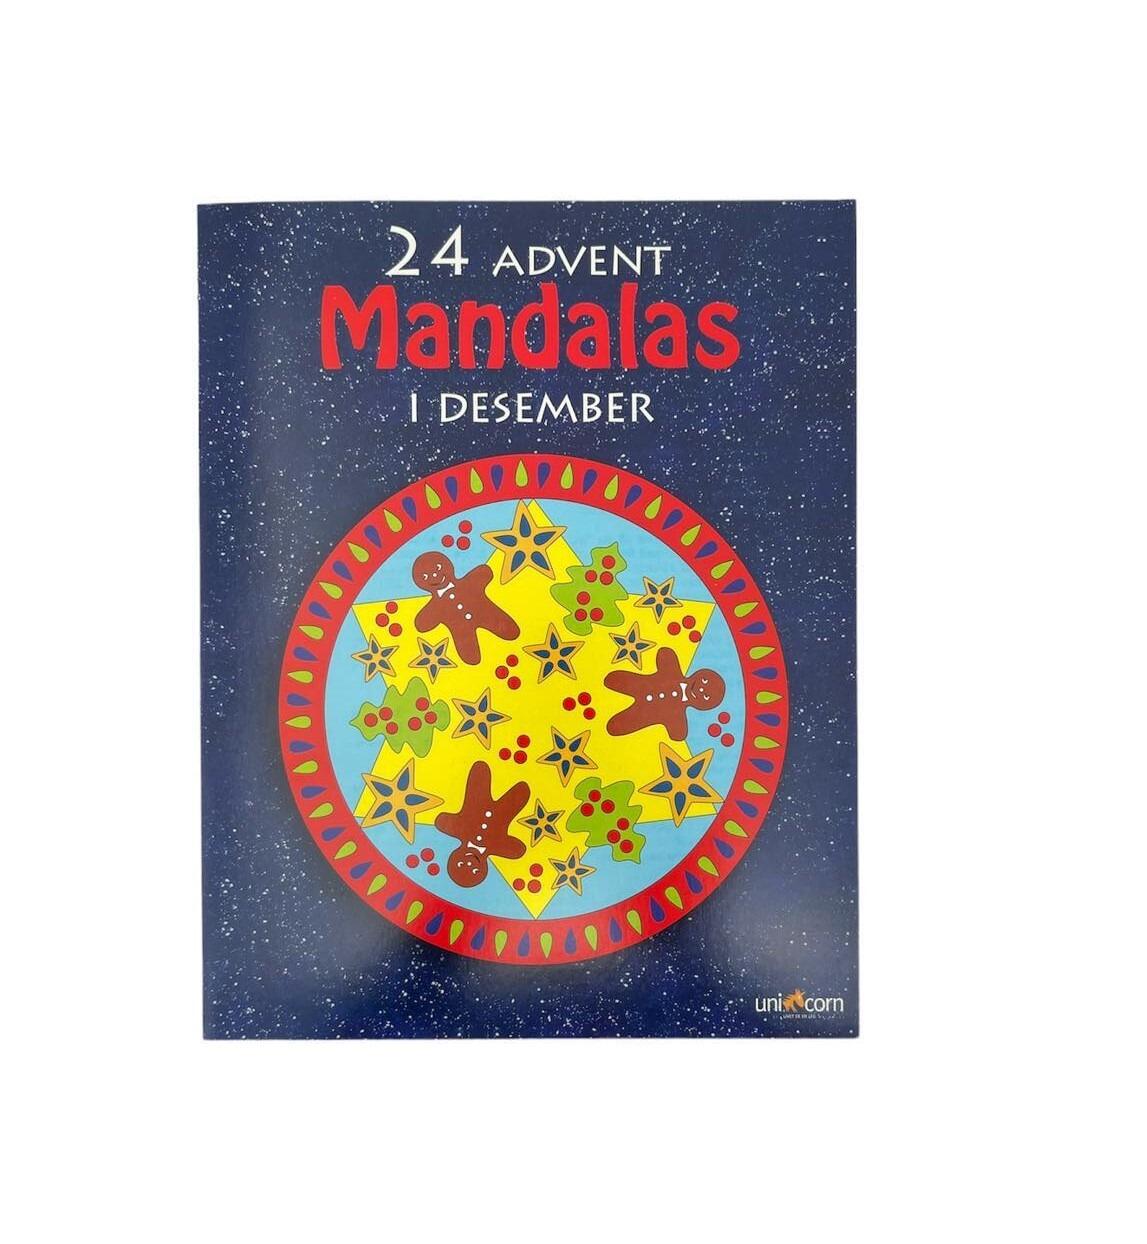 Mandala 24 adventsmotiver